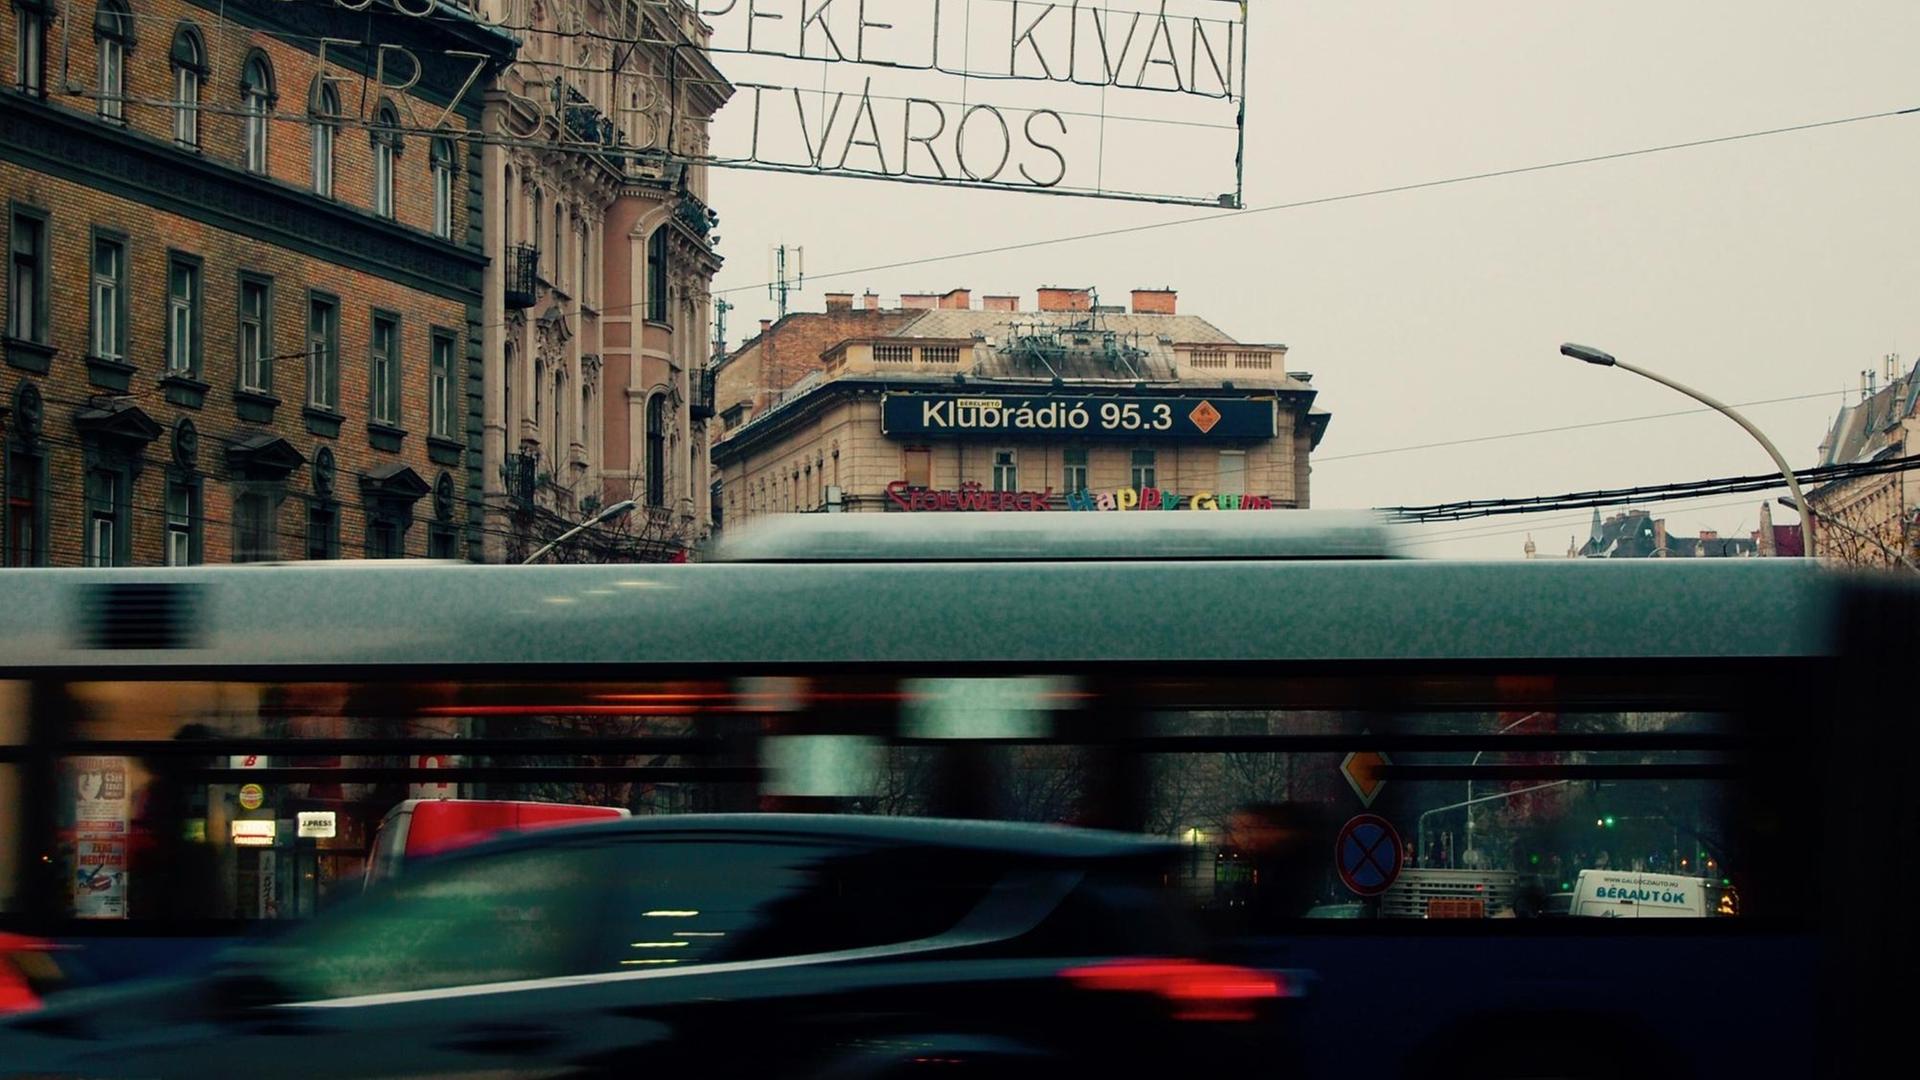 Werbung für Klubradio in Budapest "Frohe Feiertage wünscht Elisabeth-Stadt".